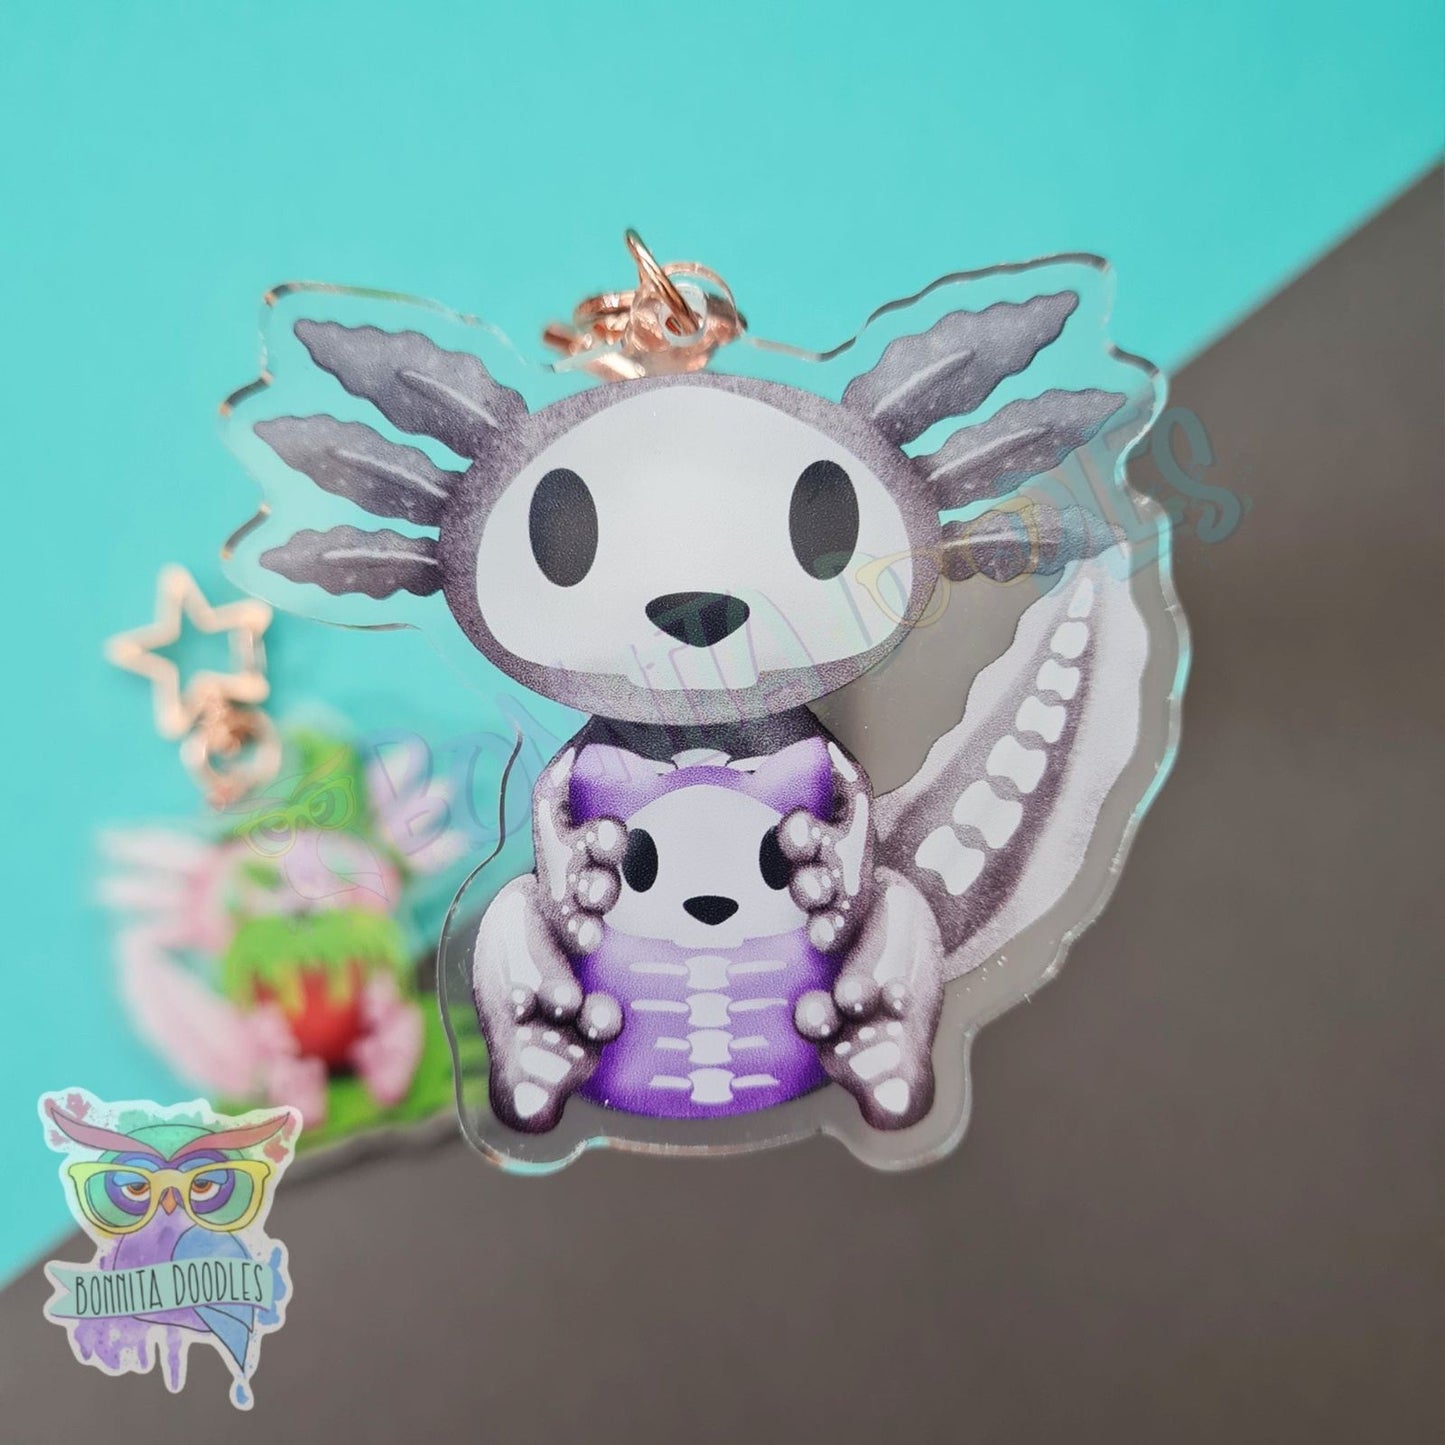 Bones - Poinson apple axolotl keychain / charm. Halloween creepy cute